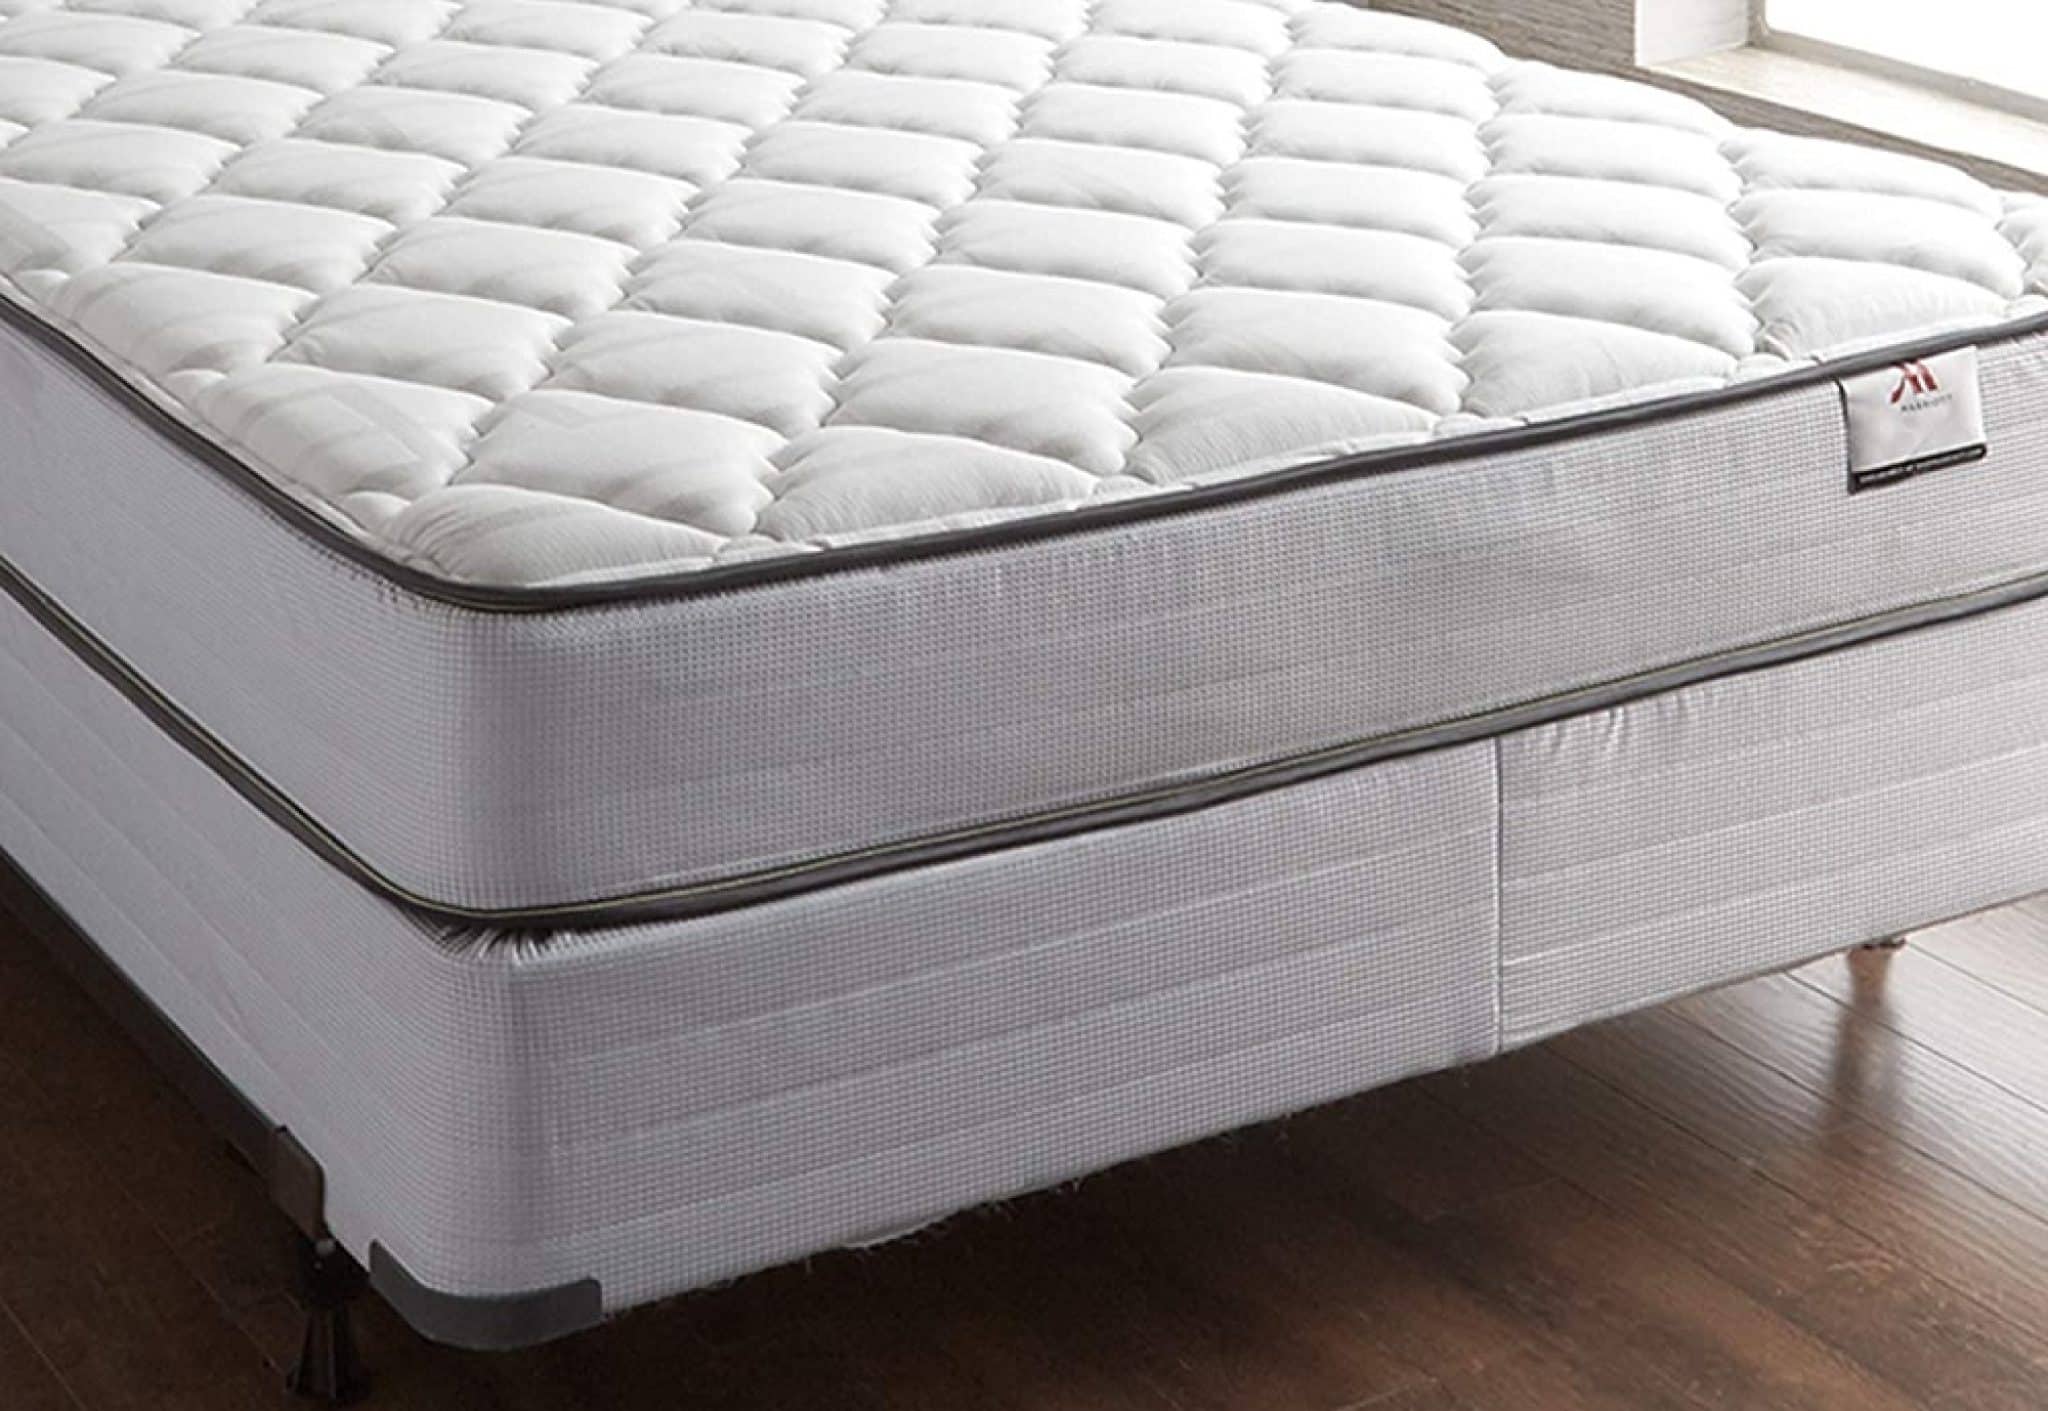 marriott mattress for sale